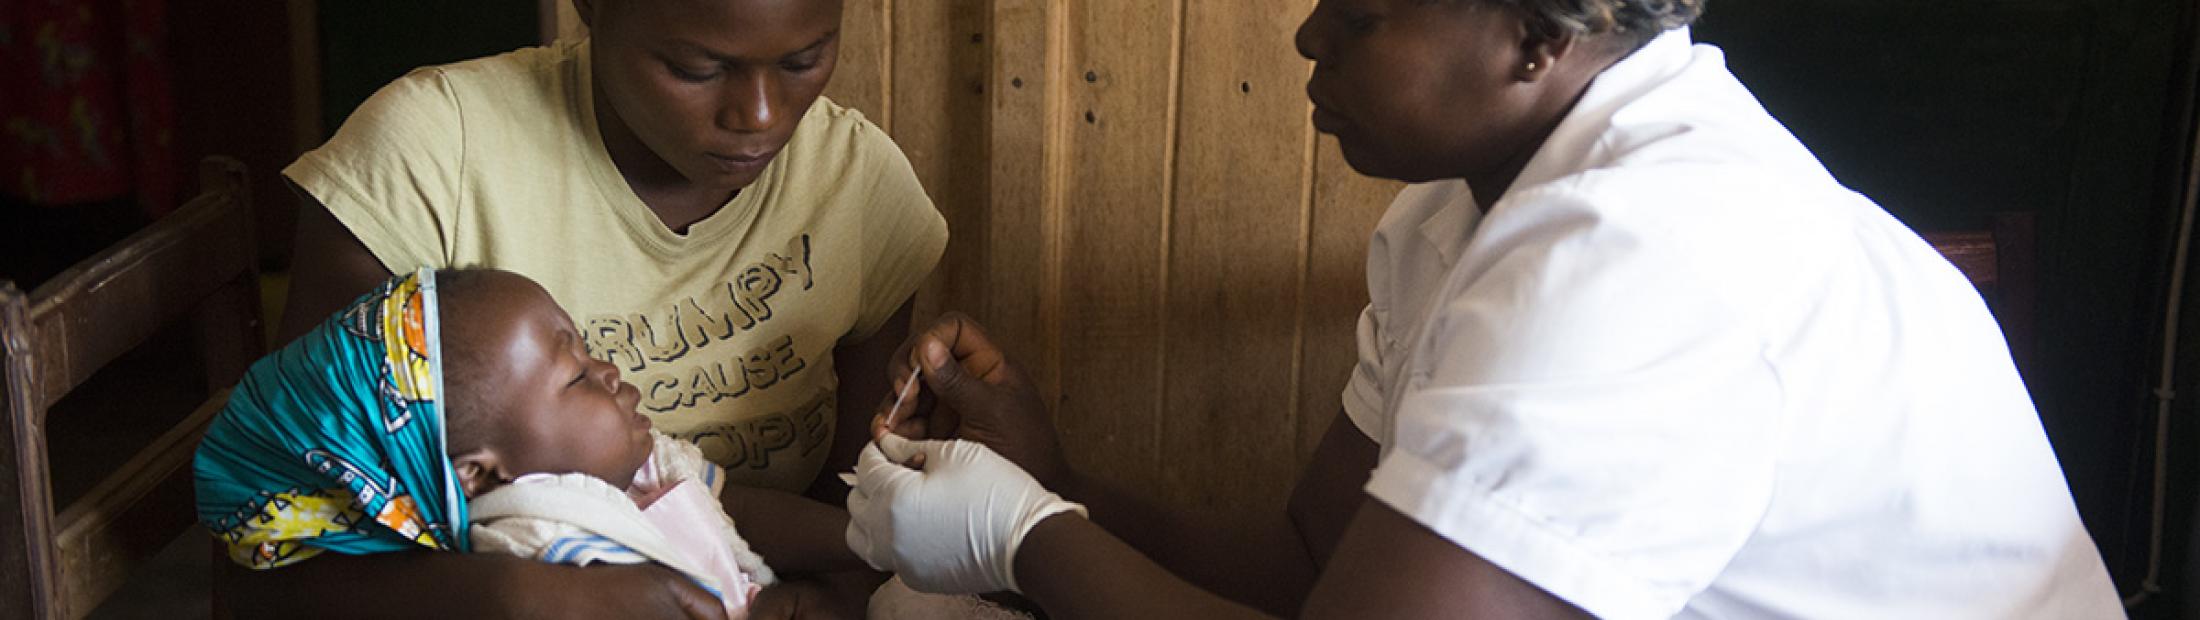 Ébola en el Congo